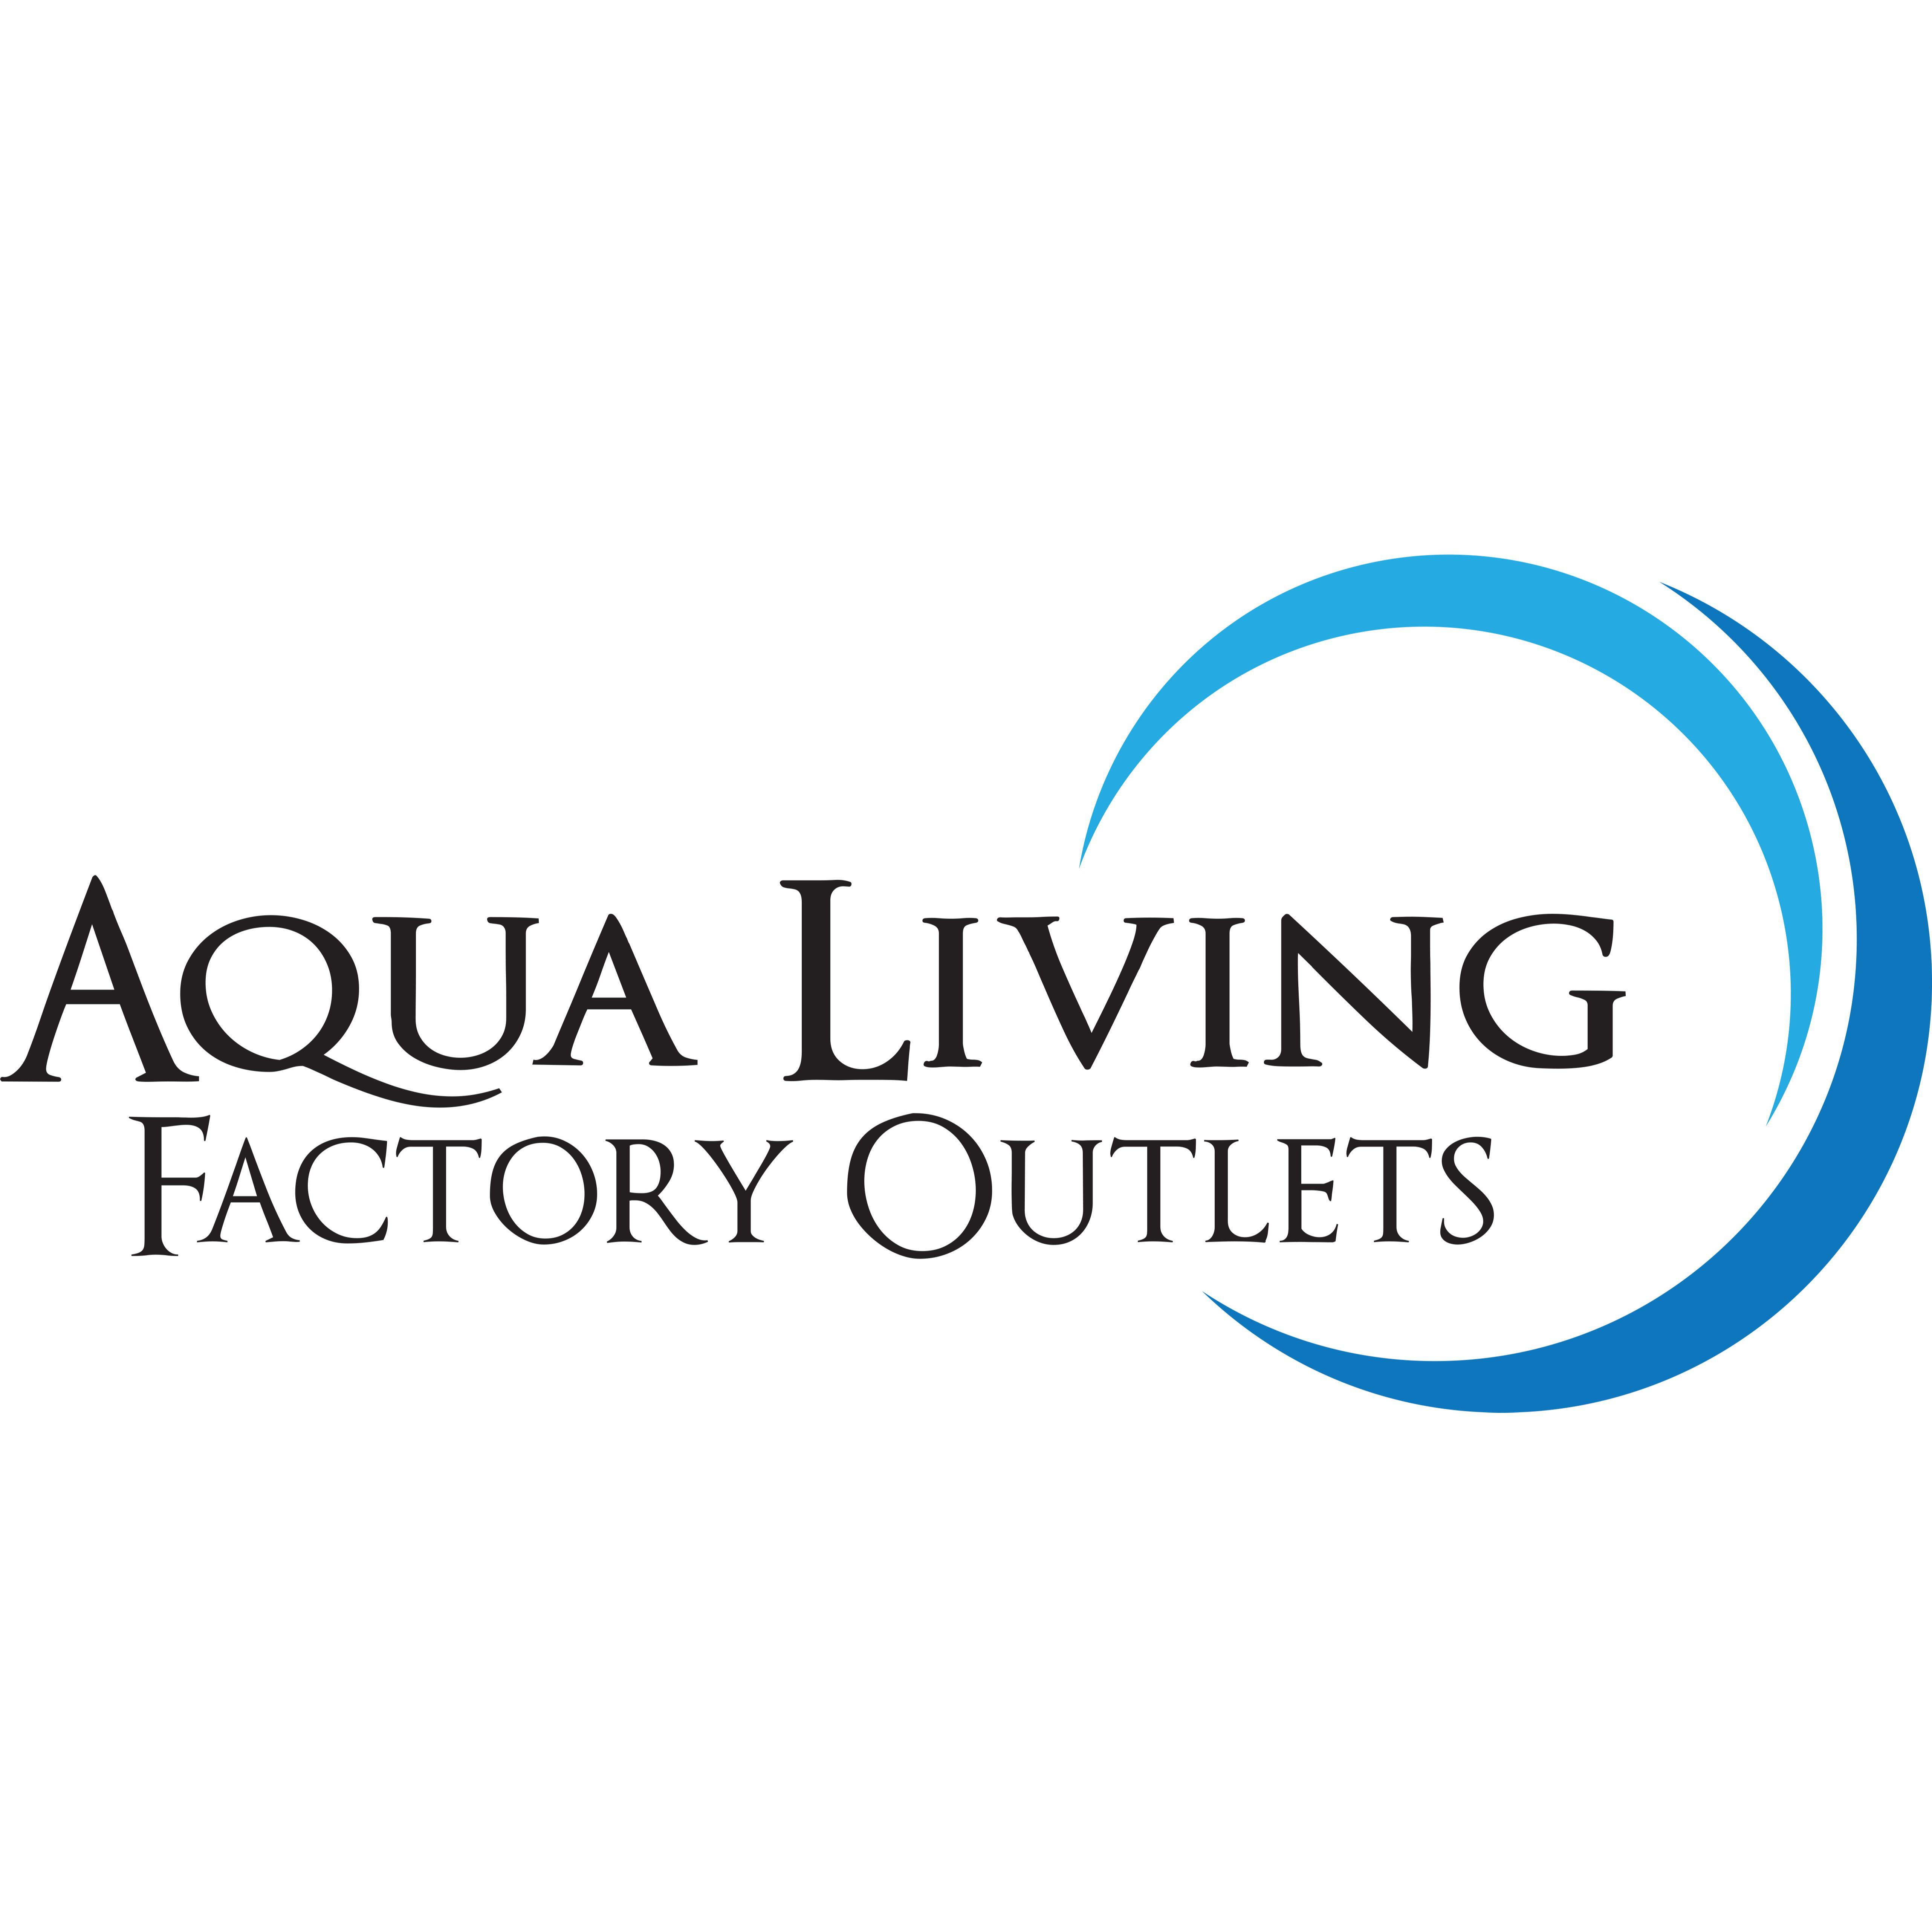 Aqua Living Factory Outlets - Lexington, KY 40505 - (859)869-9808 | ShowMeLocal.com